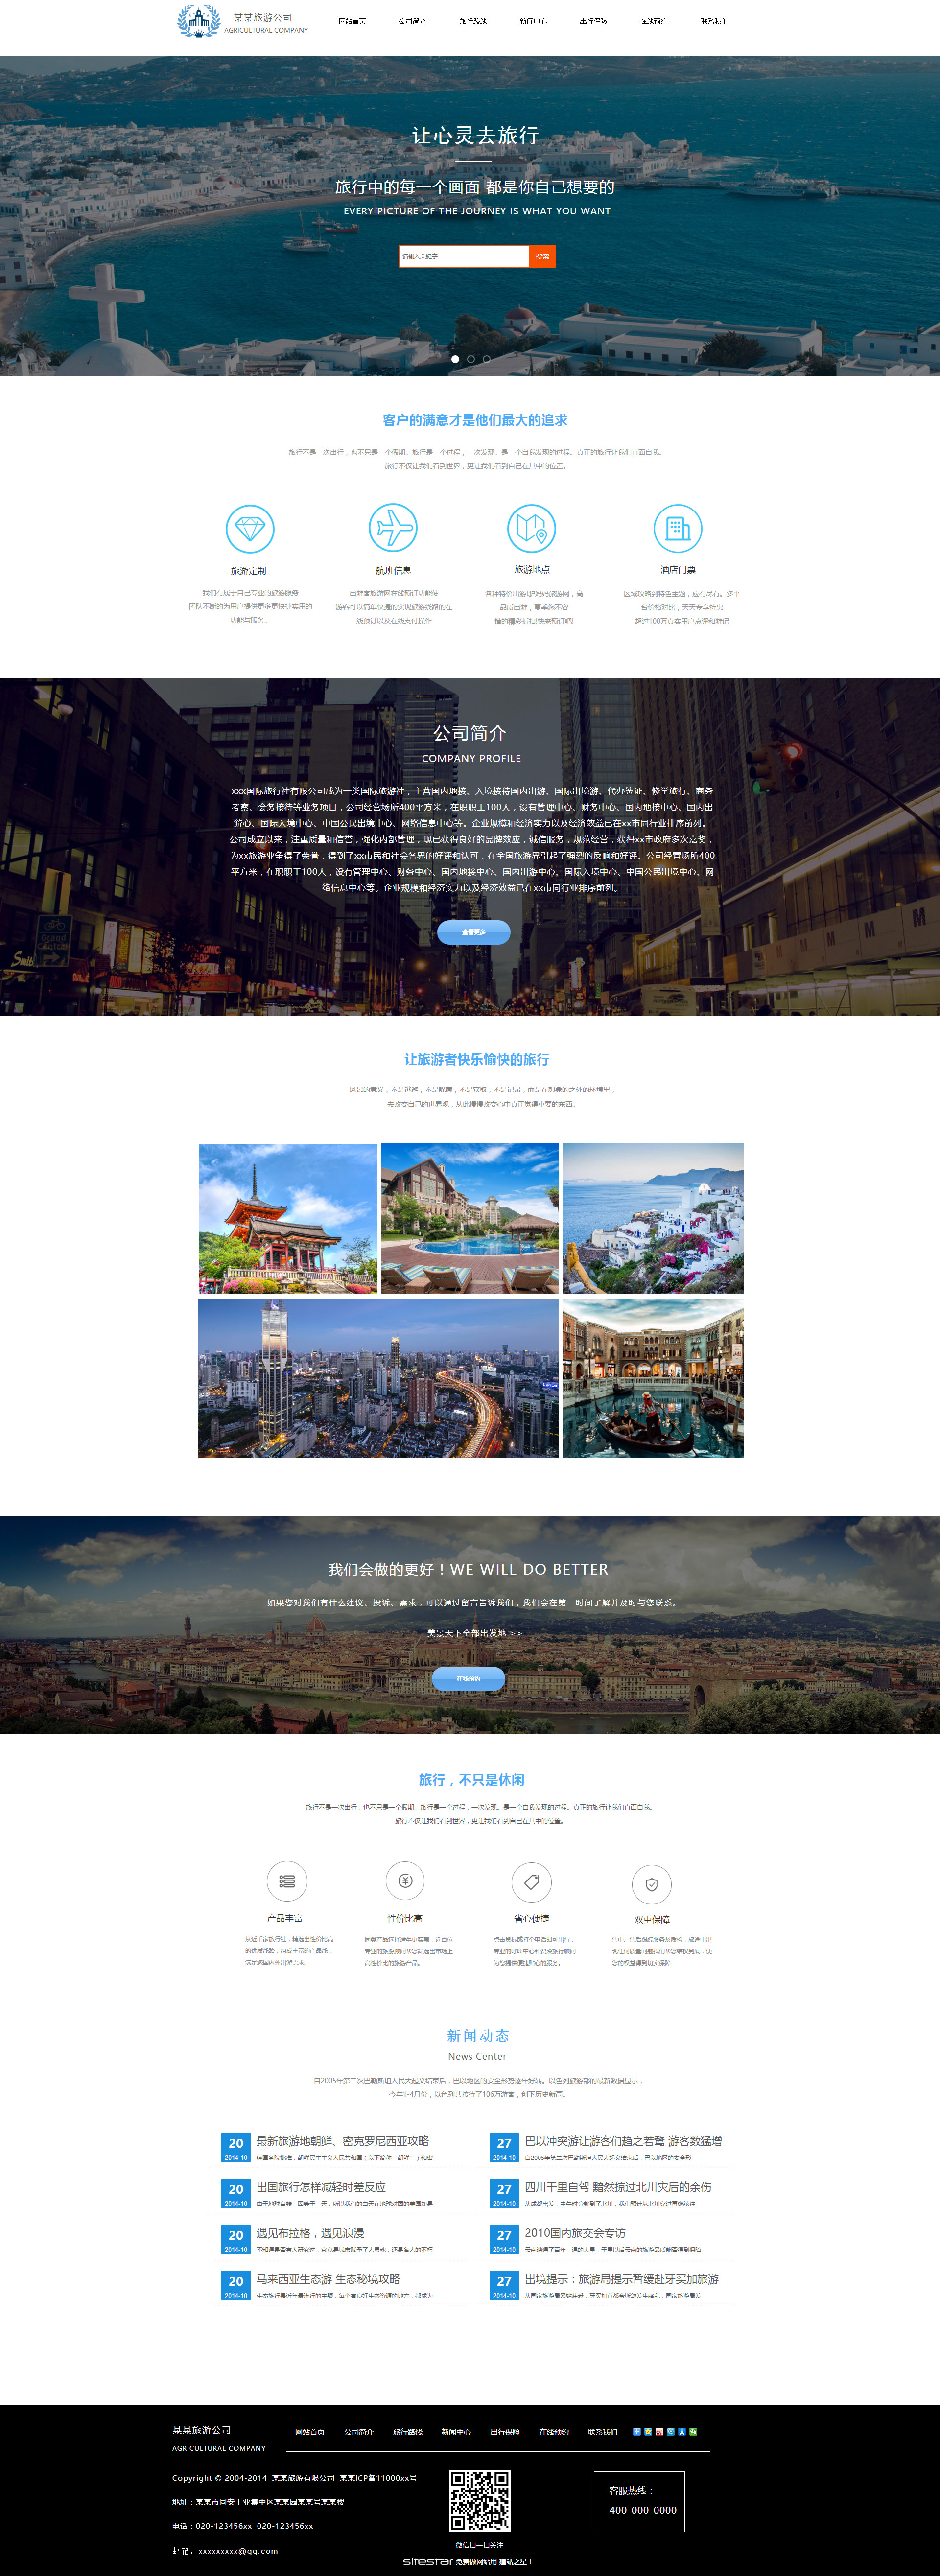 旅游、风景网站模板-travel-1130125